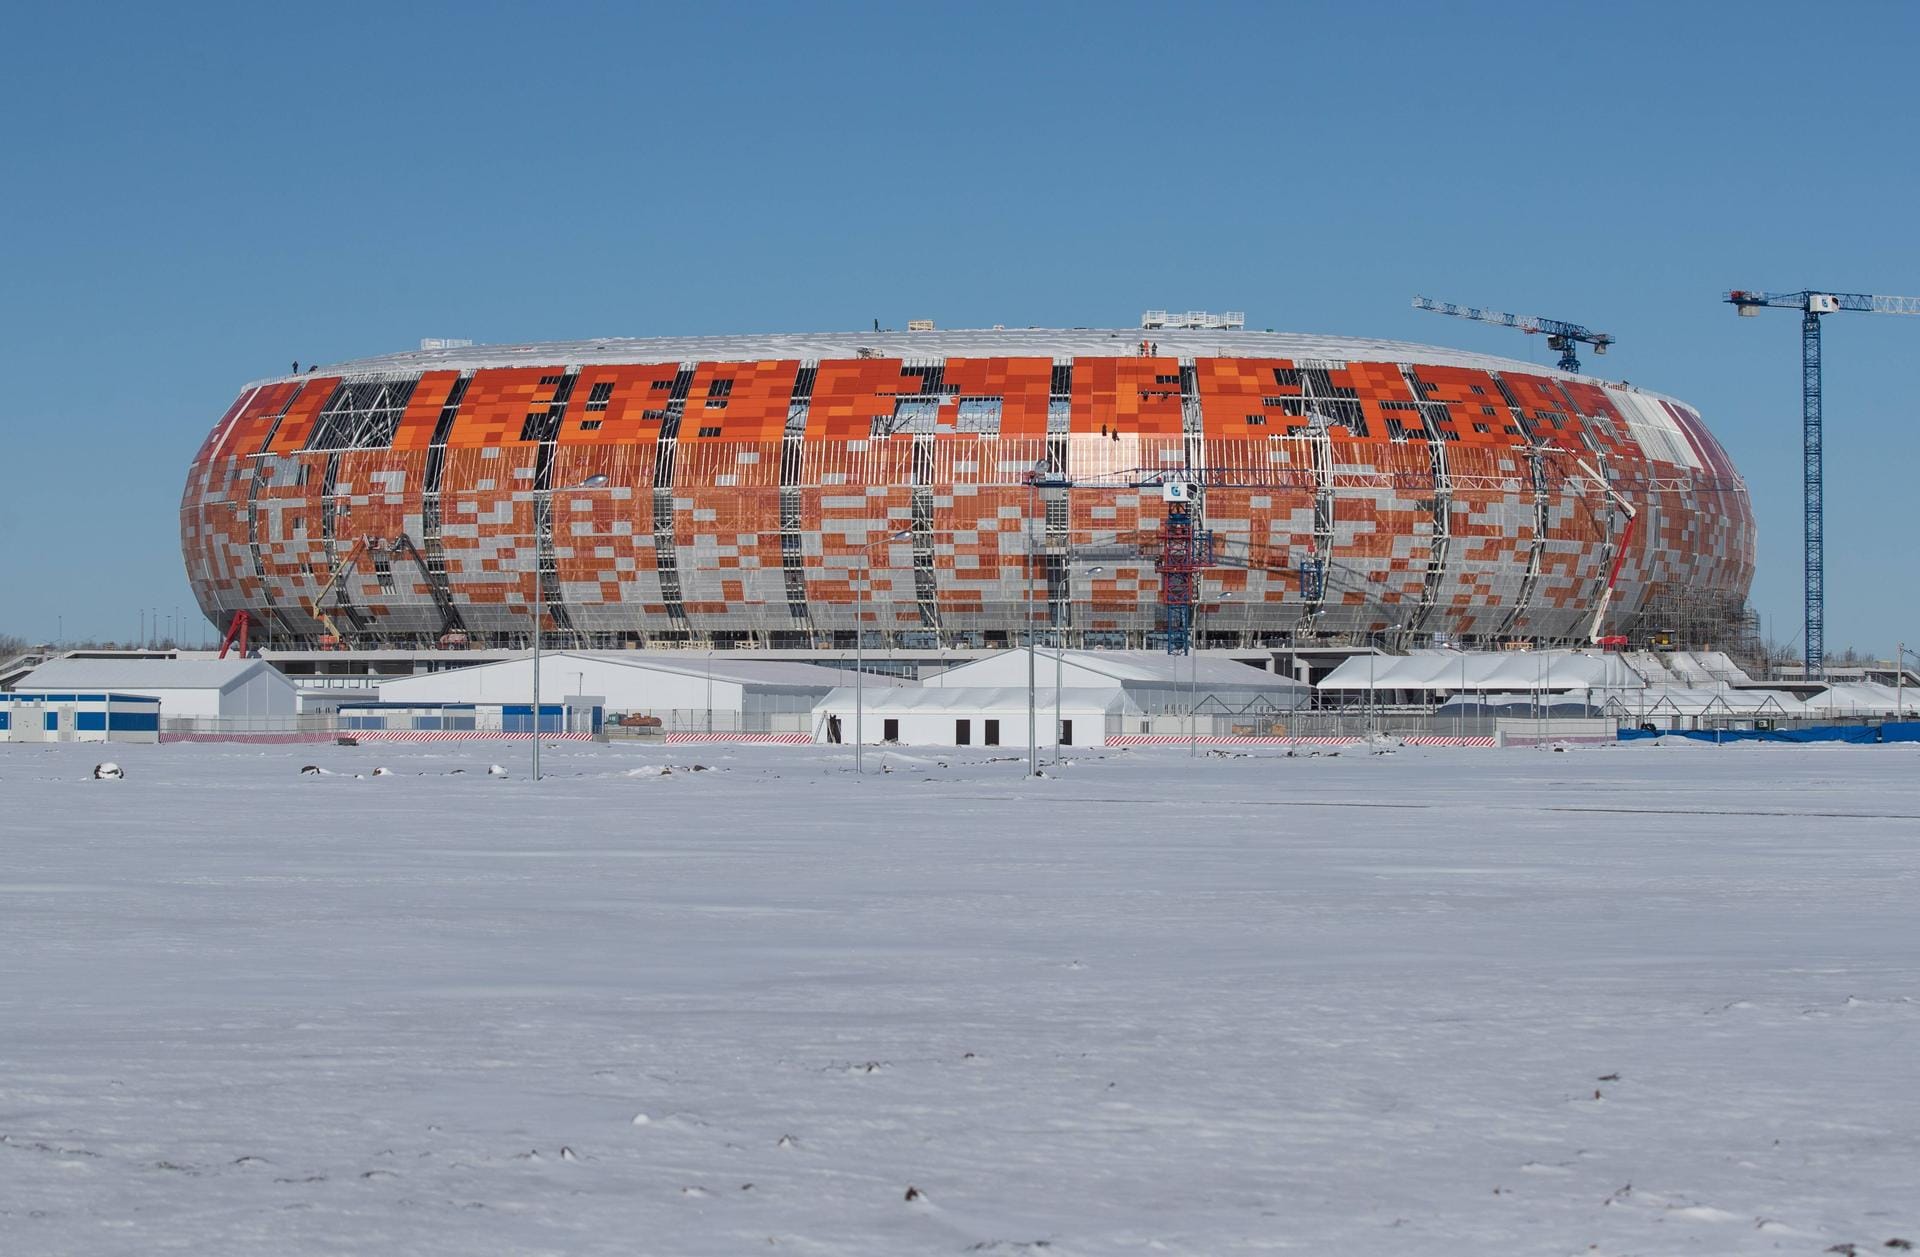 Yubileyniy-Stadion Saransk: Die Stadt Saransk liegt südöstlich von Moskau und gilt als eine der lebenswertesten Städte in Russland. Das mordwinische Kunsthandwerk spiegelt sich in der Ummantelung der Arena wieder: In den Farben orange, rot und weiß.